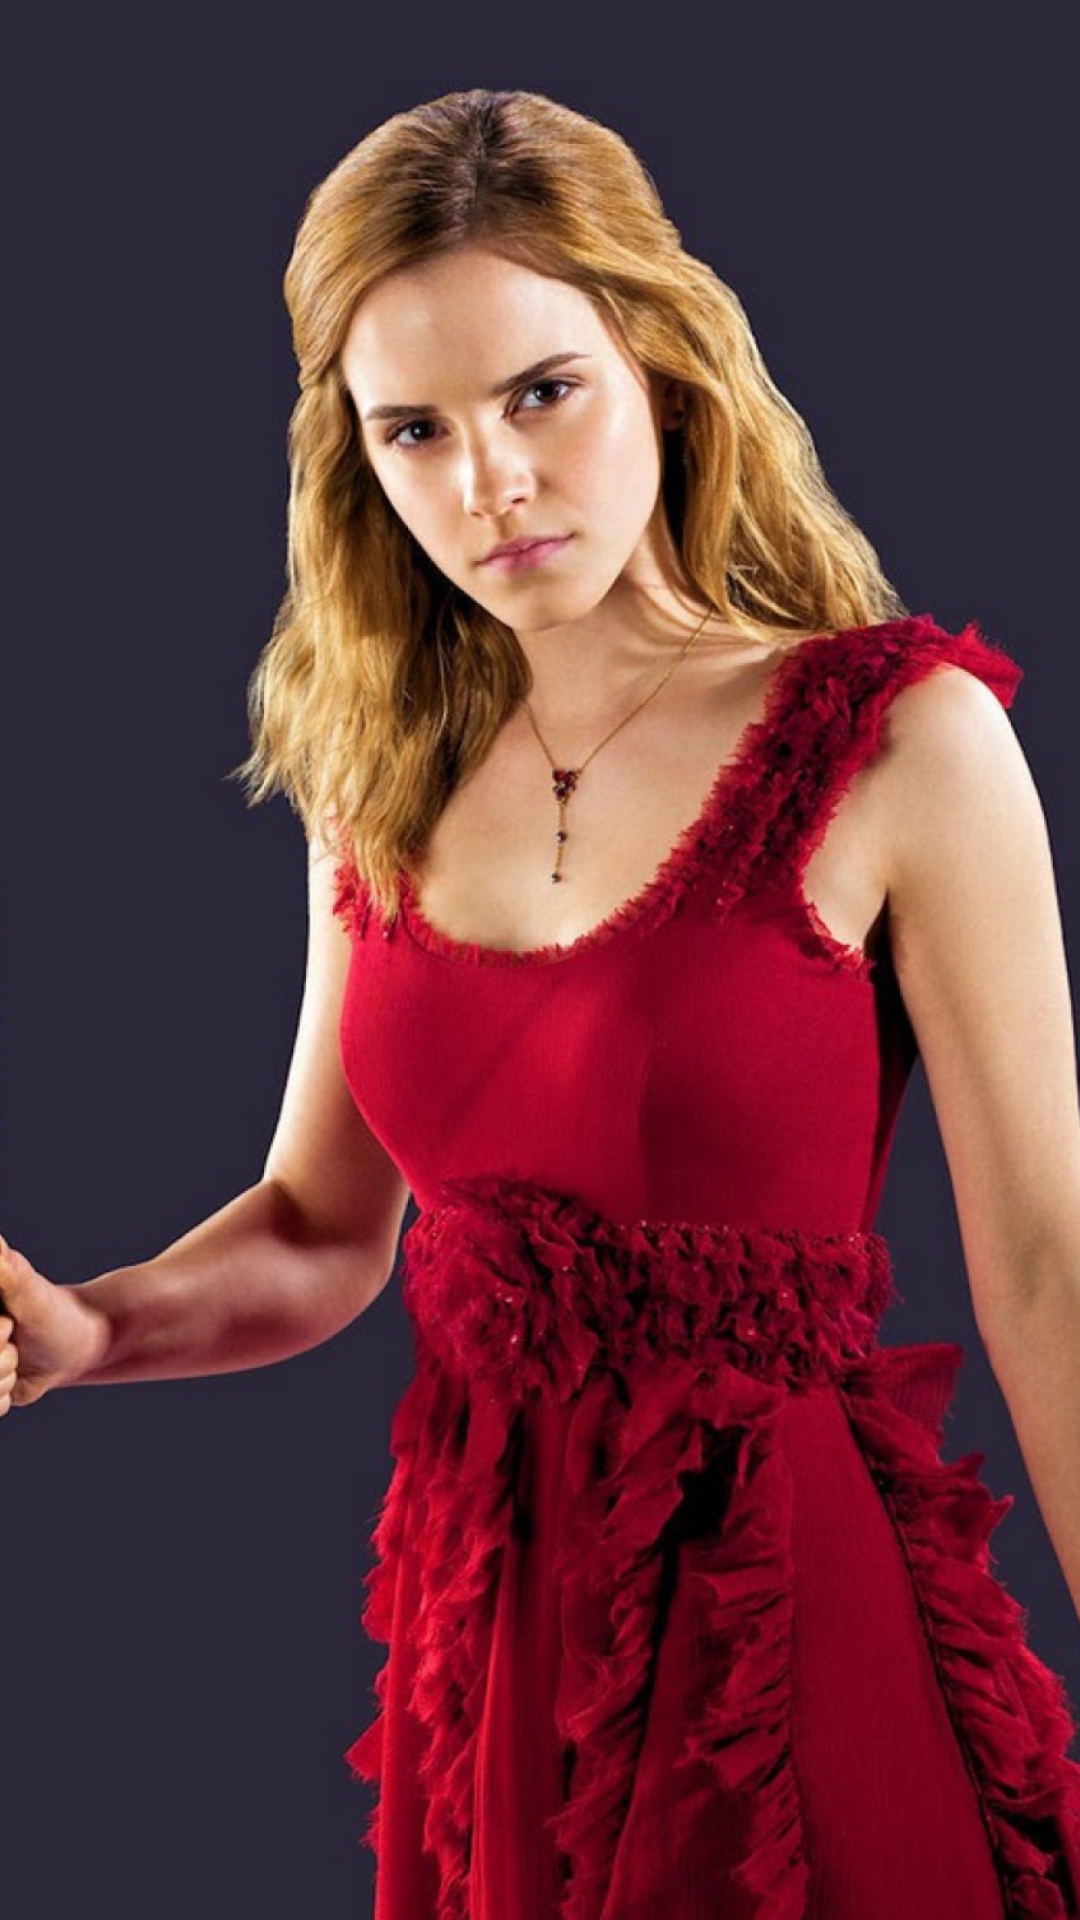 Das Emma Watson In Red Dress Wallpaper 1080x1920